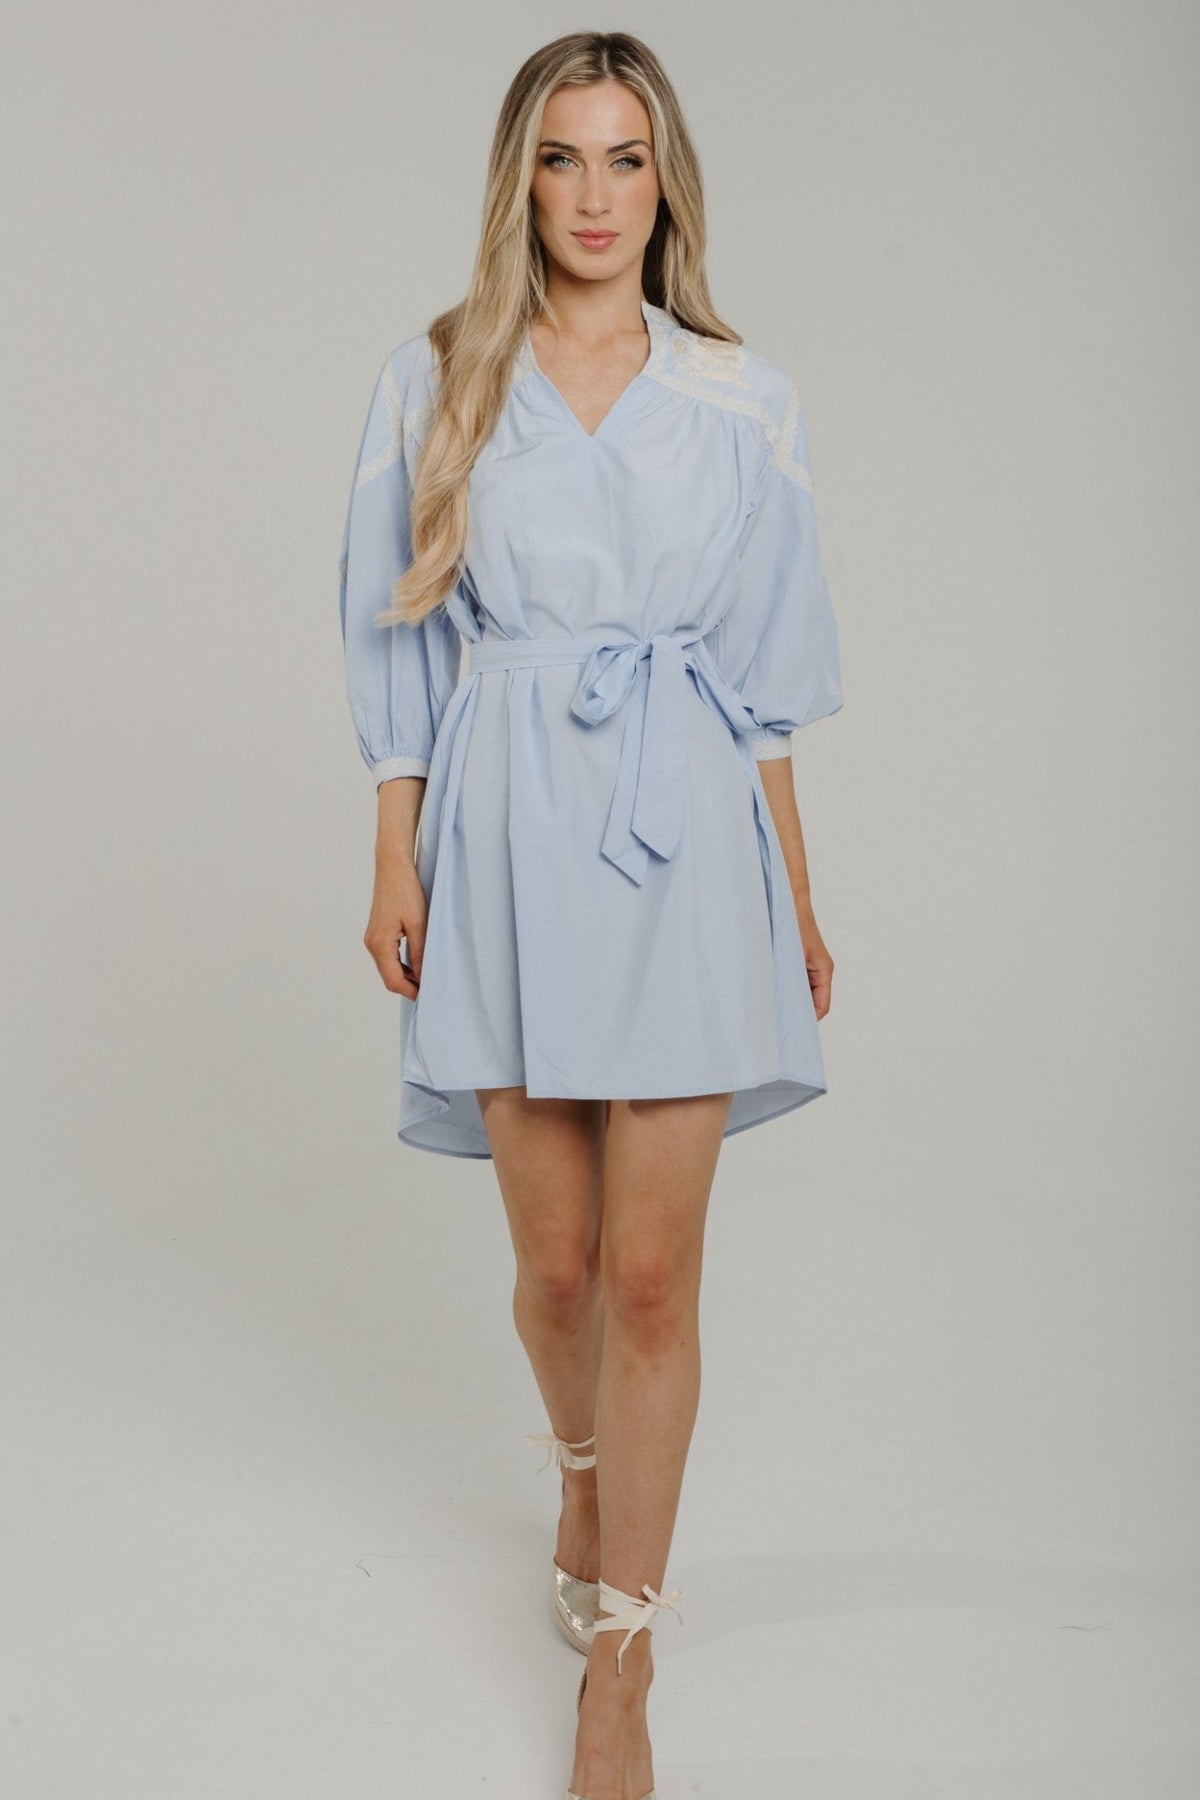 Holly Crochet Sleeve Dress In Light Blue - The Walk in Wardrobe